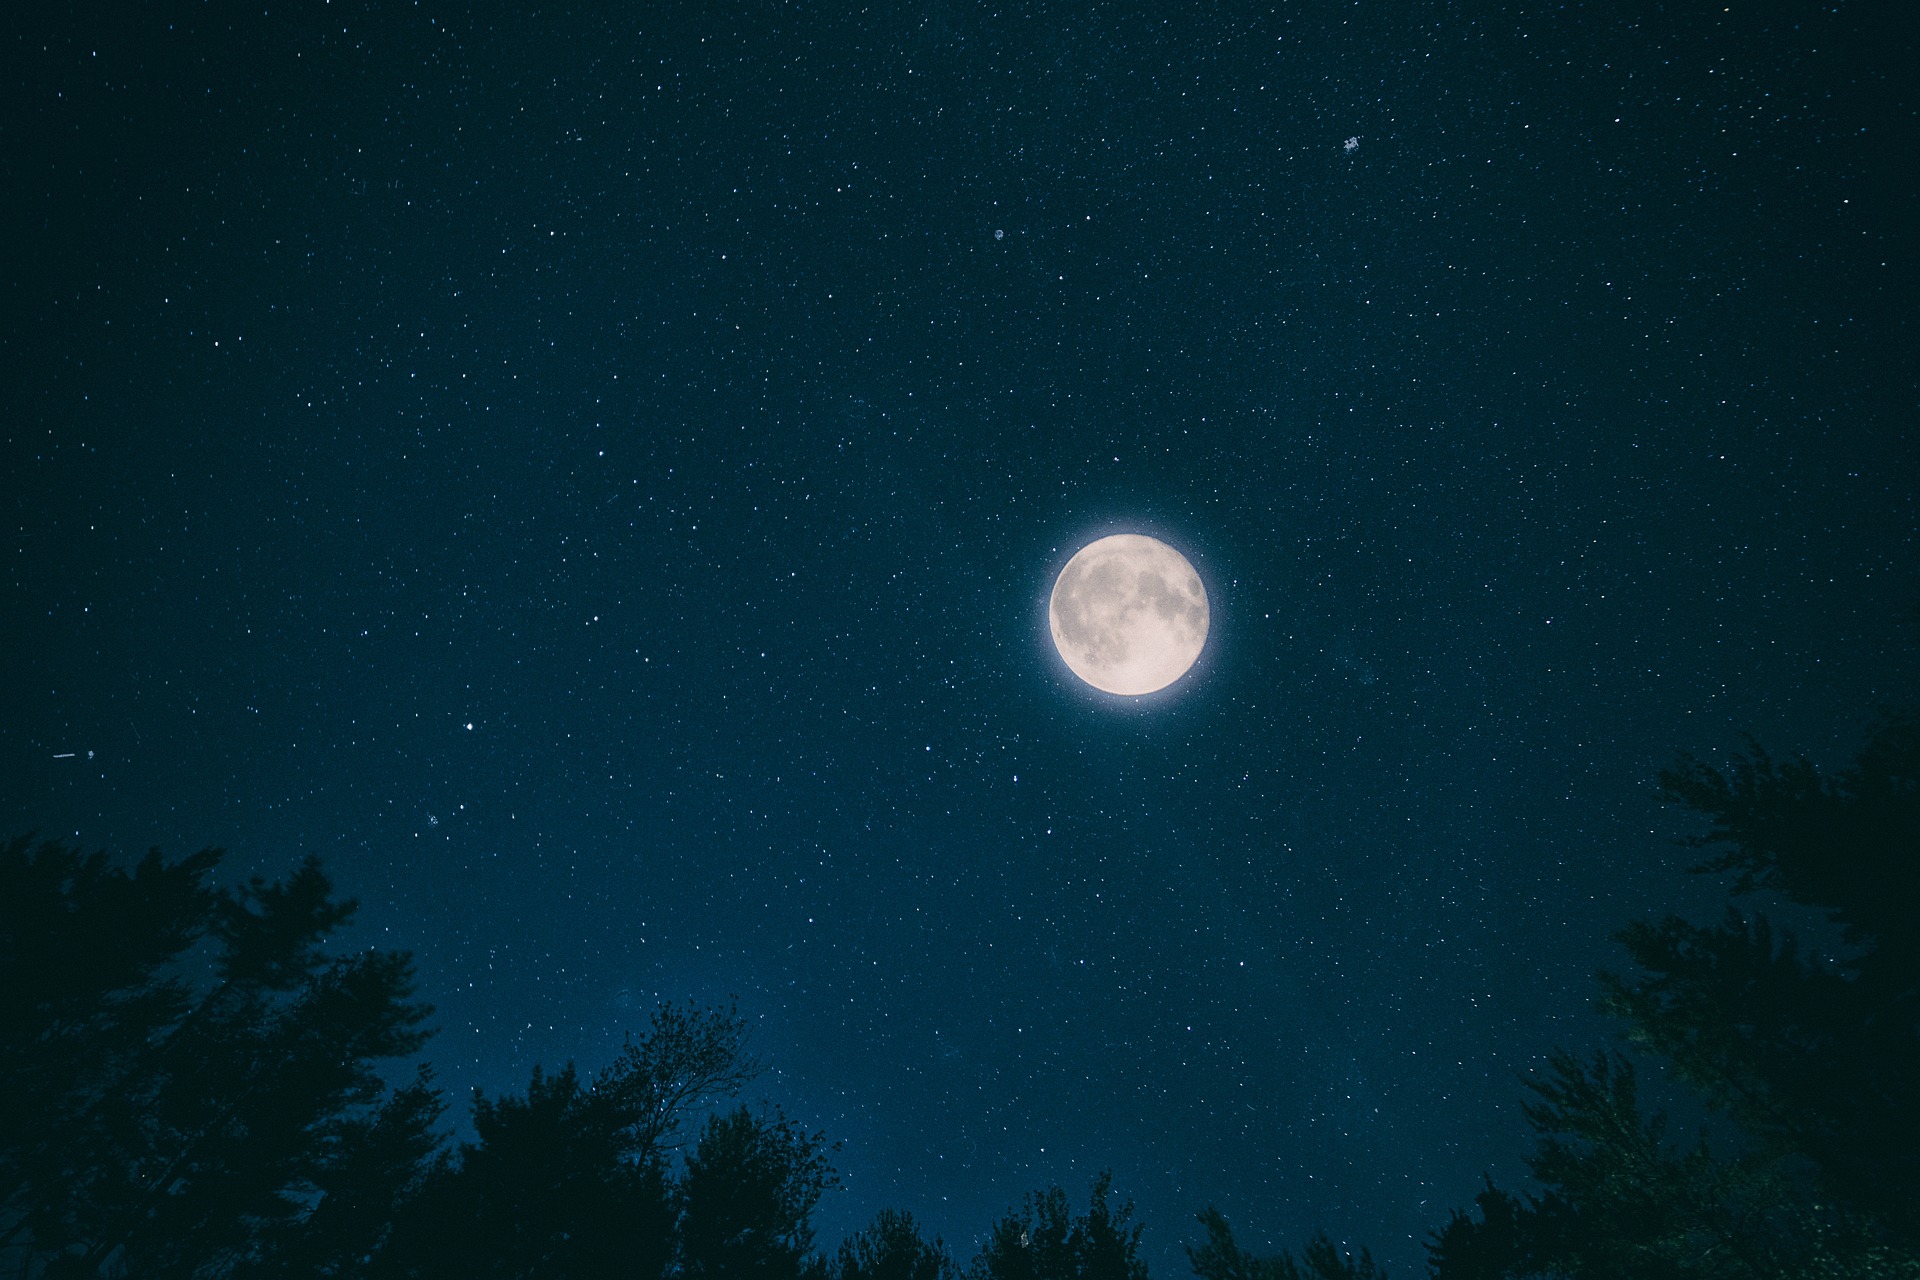 El fenómeno astronómico denominado Luna Azul será visible durante las noches del 22 y 23 de agosto.